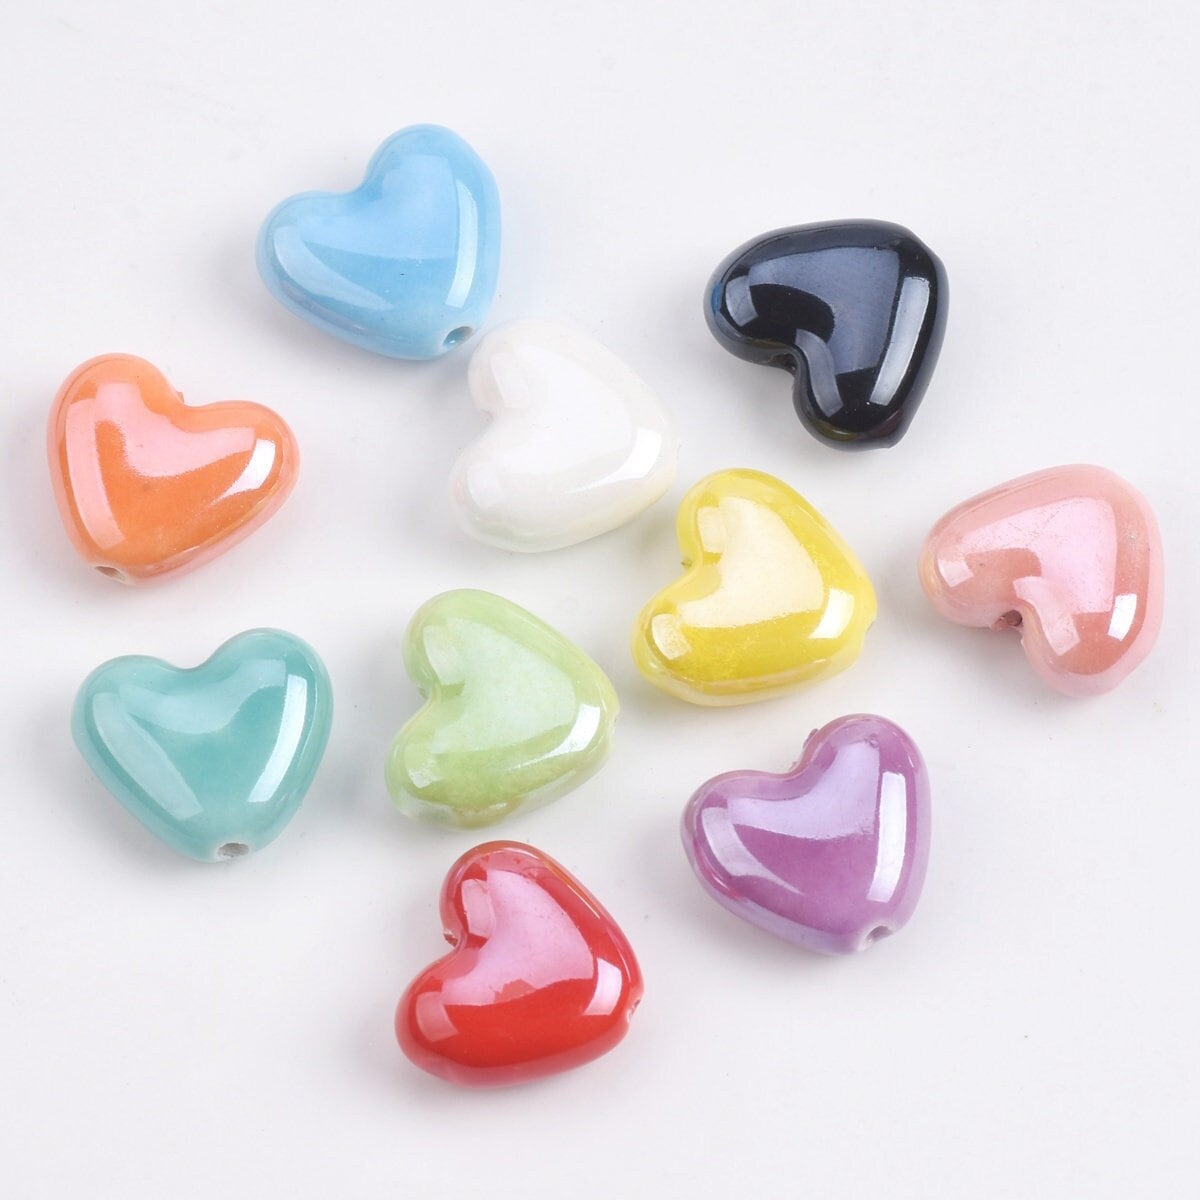 Chunky Heart Beads, Shiny Heart Beads, Heart Charms, Shiny Heart Penda